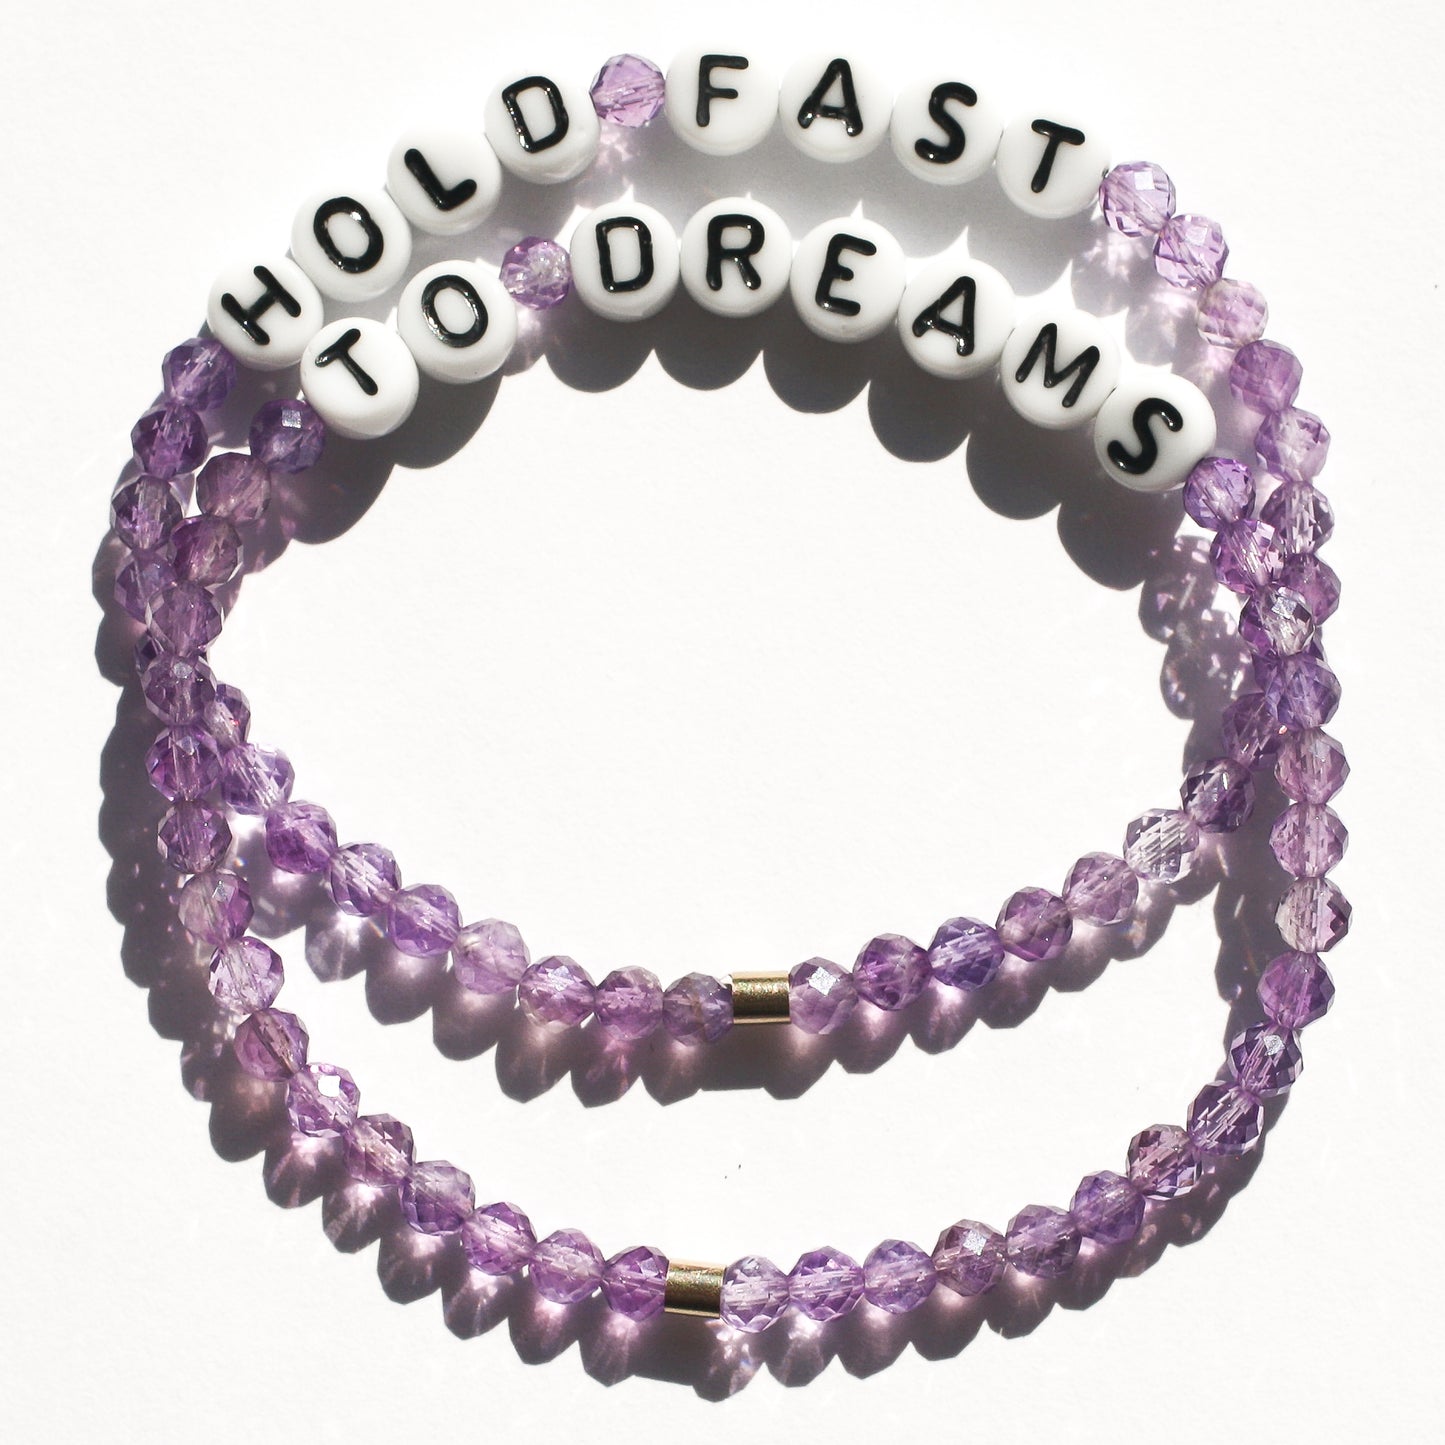 HOLD FAST TO DREAMS bespoke bracelet in amethyst